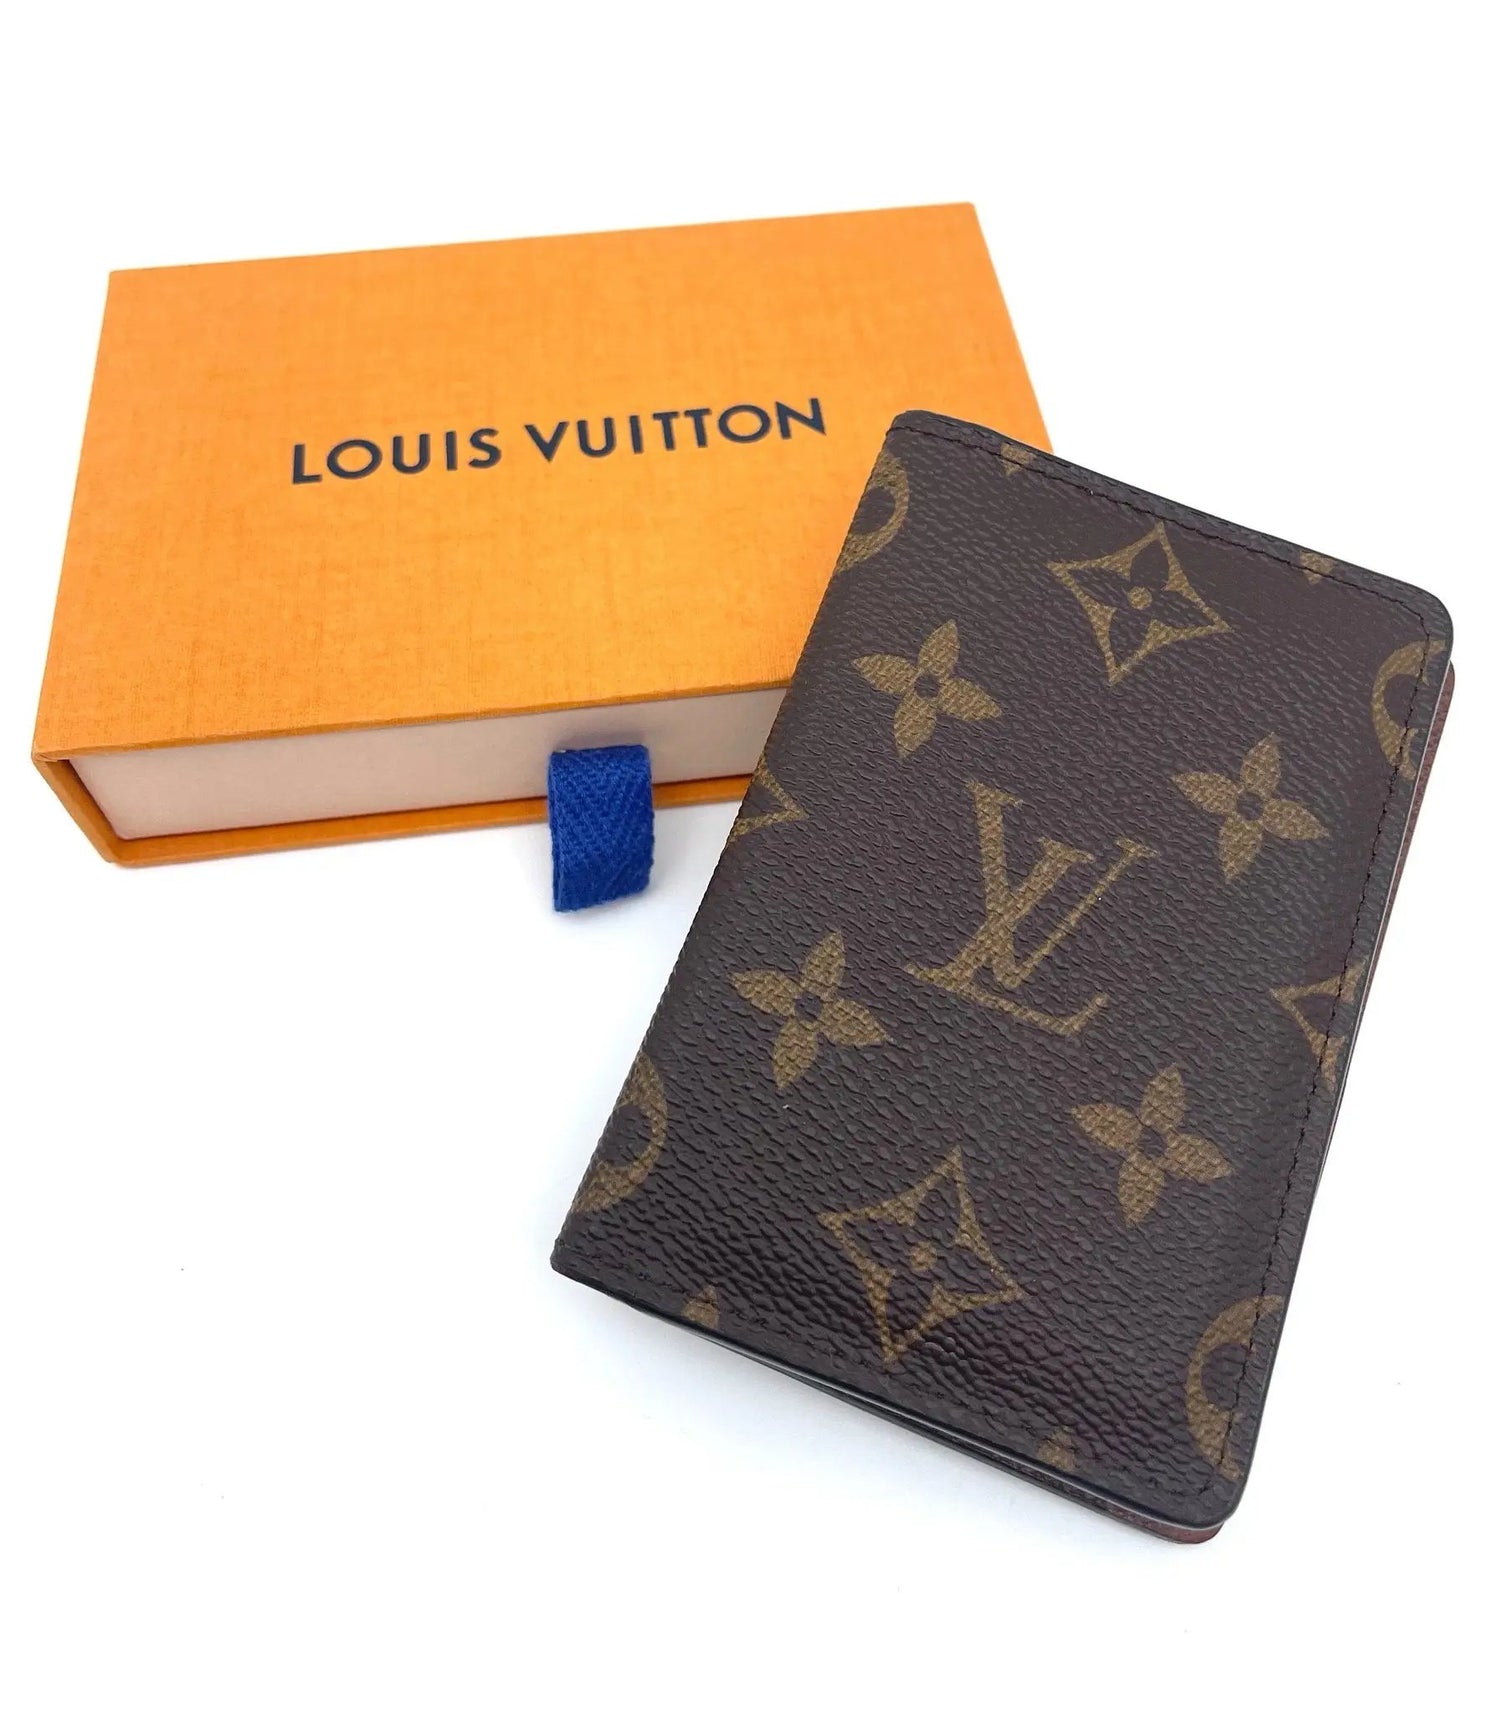 Louis Vuitton - Porte cartes - Les Folies d&